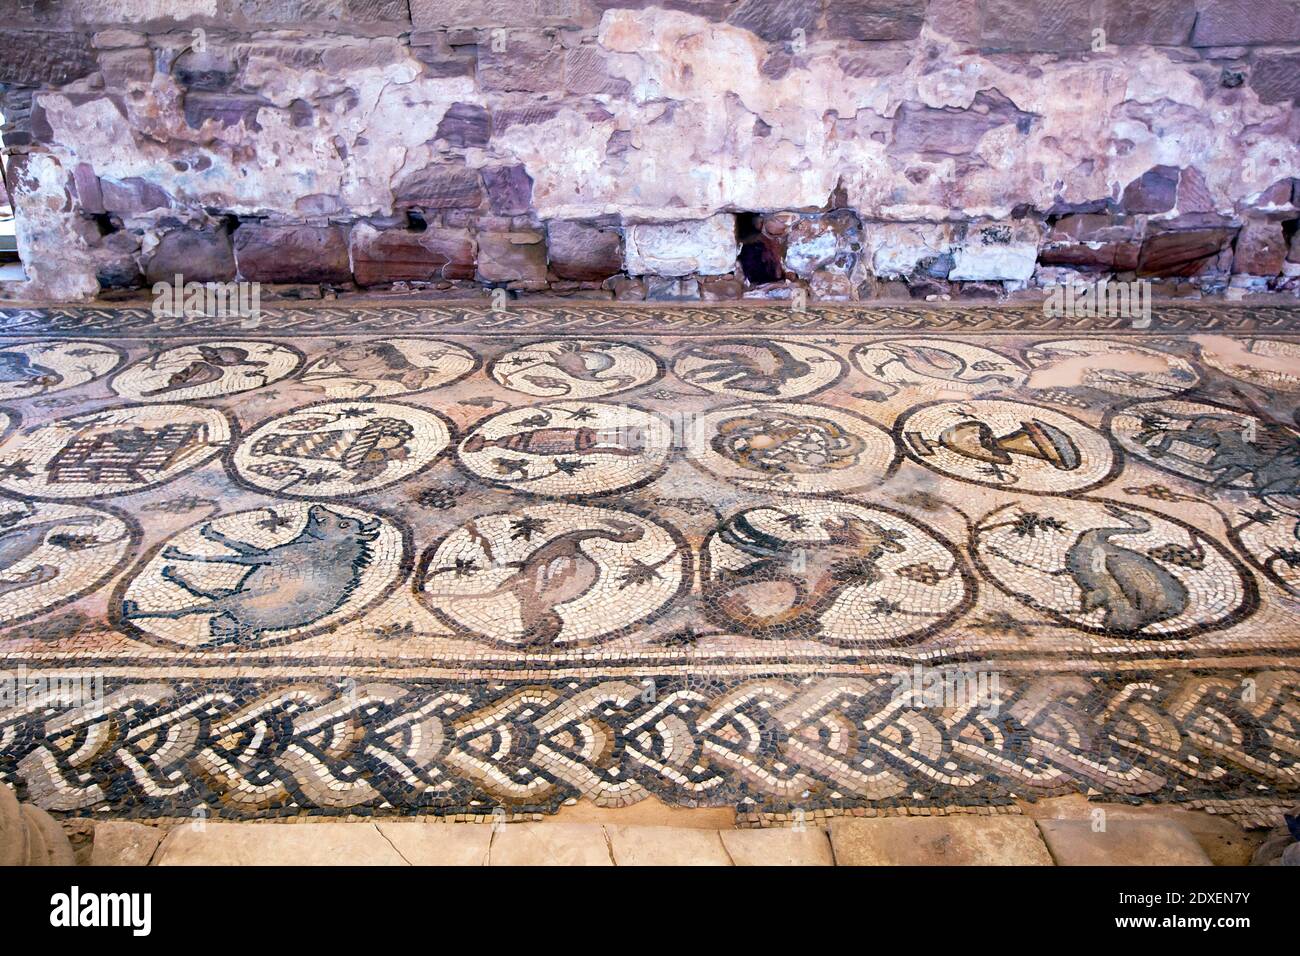 L'allée nord de l'église Petra présentant des mosaïques datant du 5e siècle après J.-C. Il y a 84 médaillons dans trois rangées entourées de la frontière guilloche. Banque D'Images